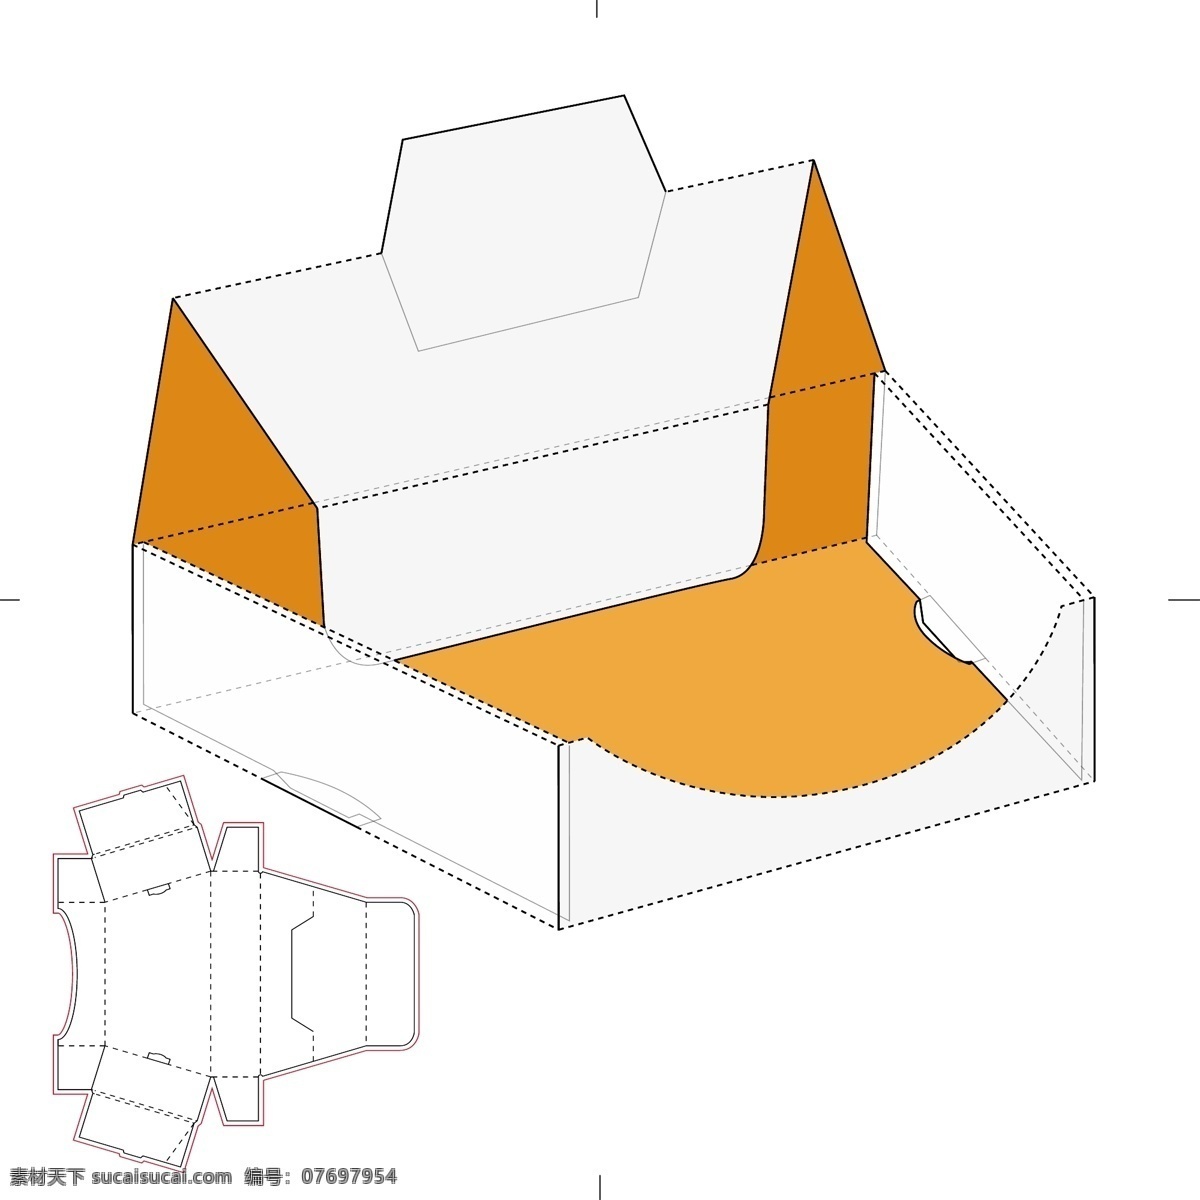 包装盒设计 包装盒模板 包装盒 展开示意图 手绘 纸盒包装 矢量 包装设计